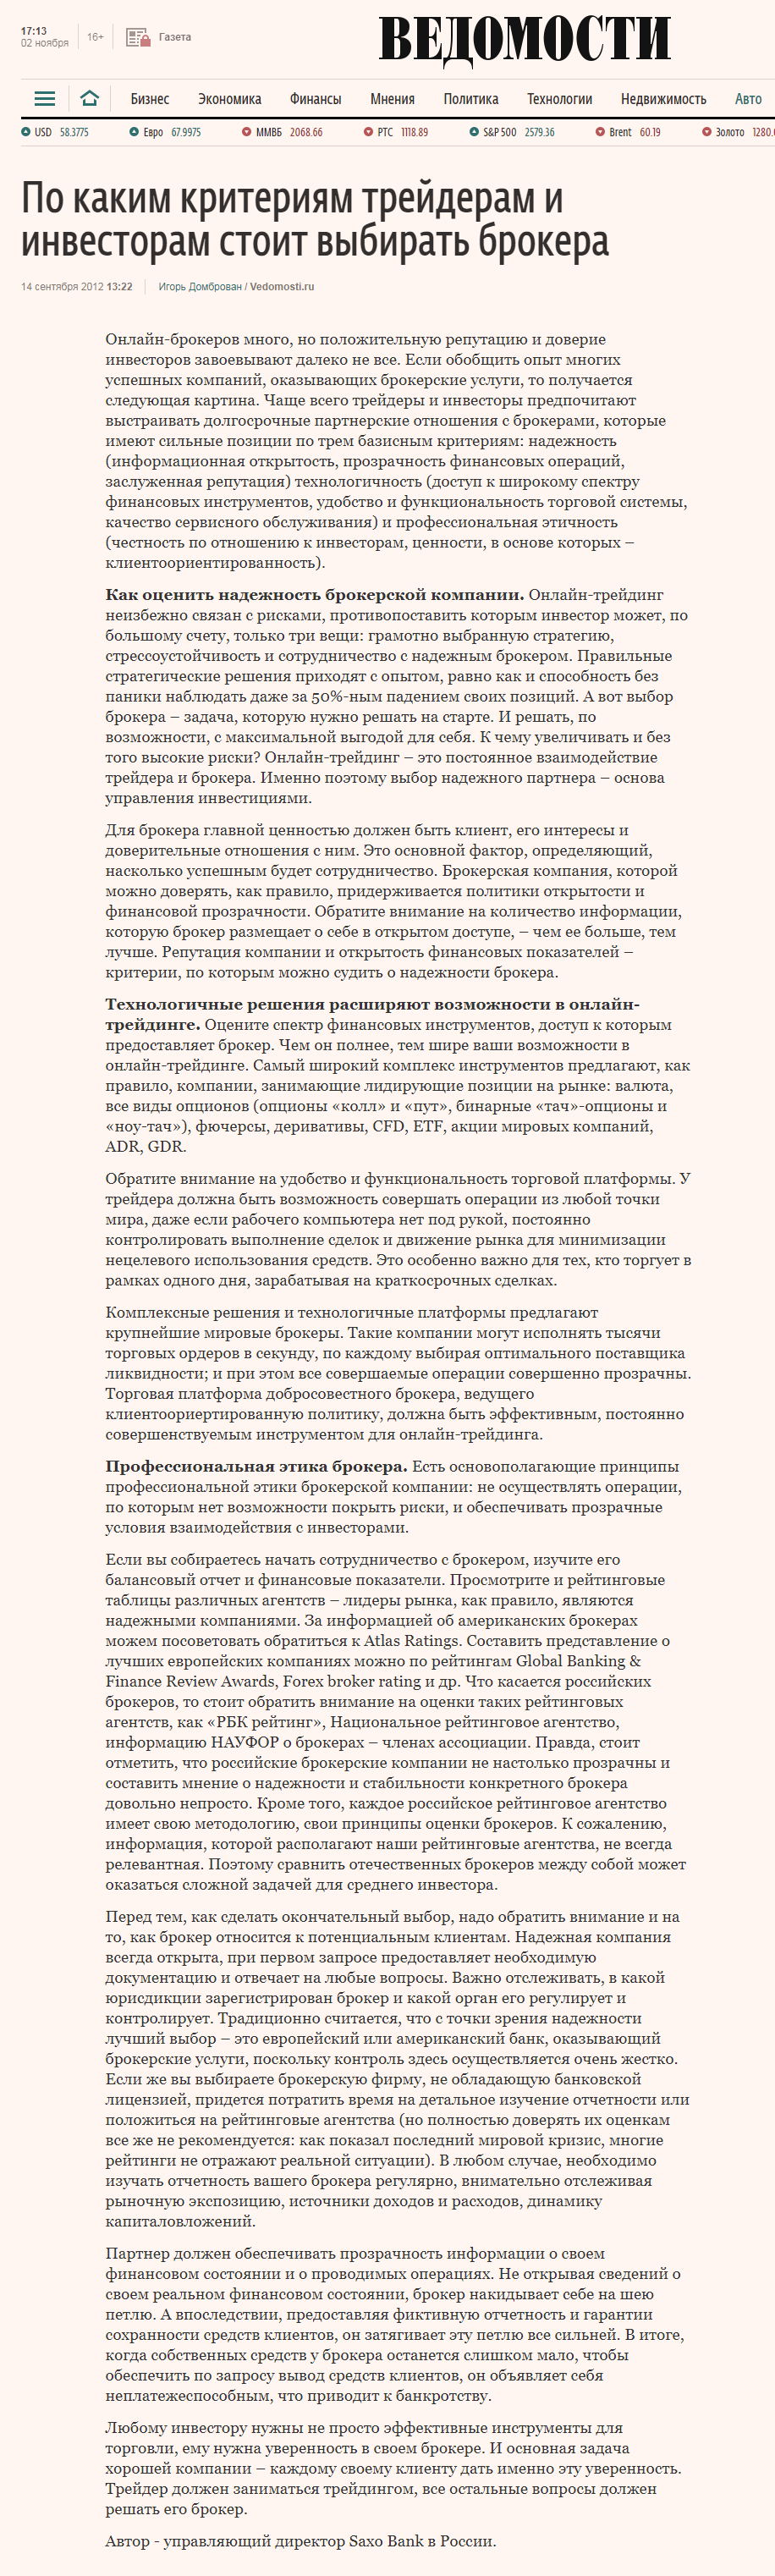 Пример статьи для сайта vedomosti.ru, тематика «финансы»